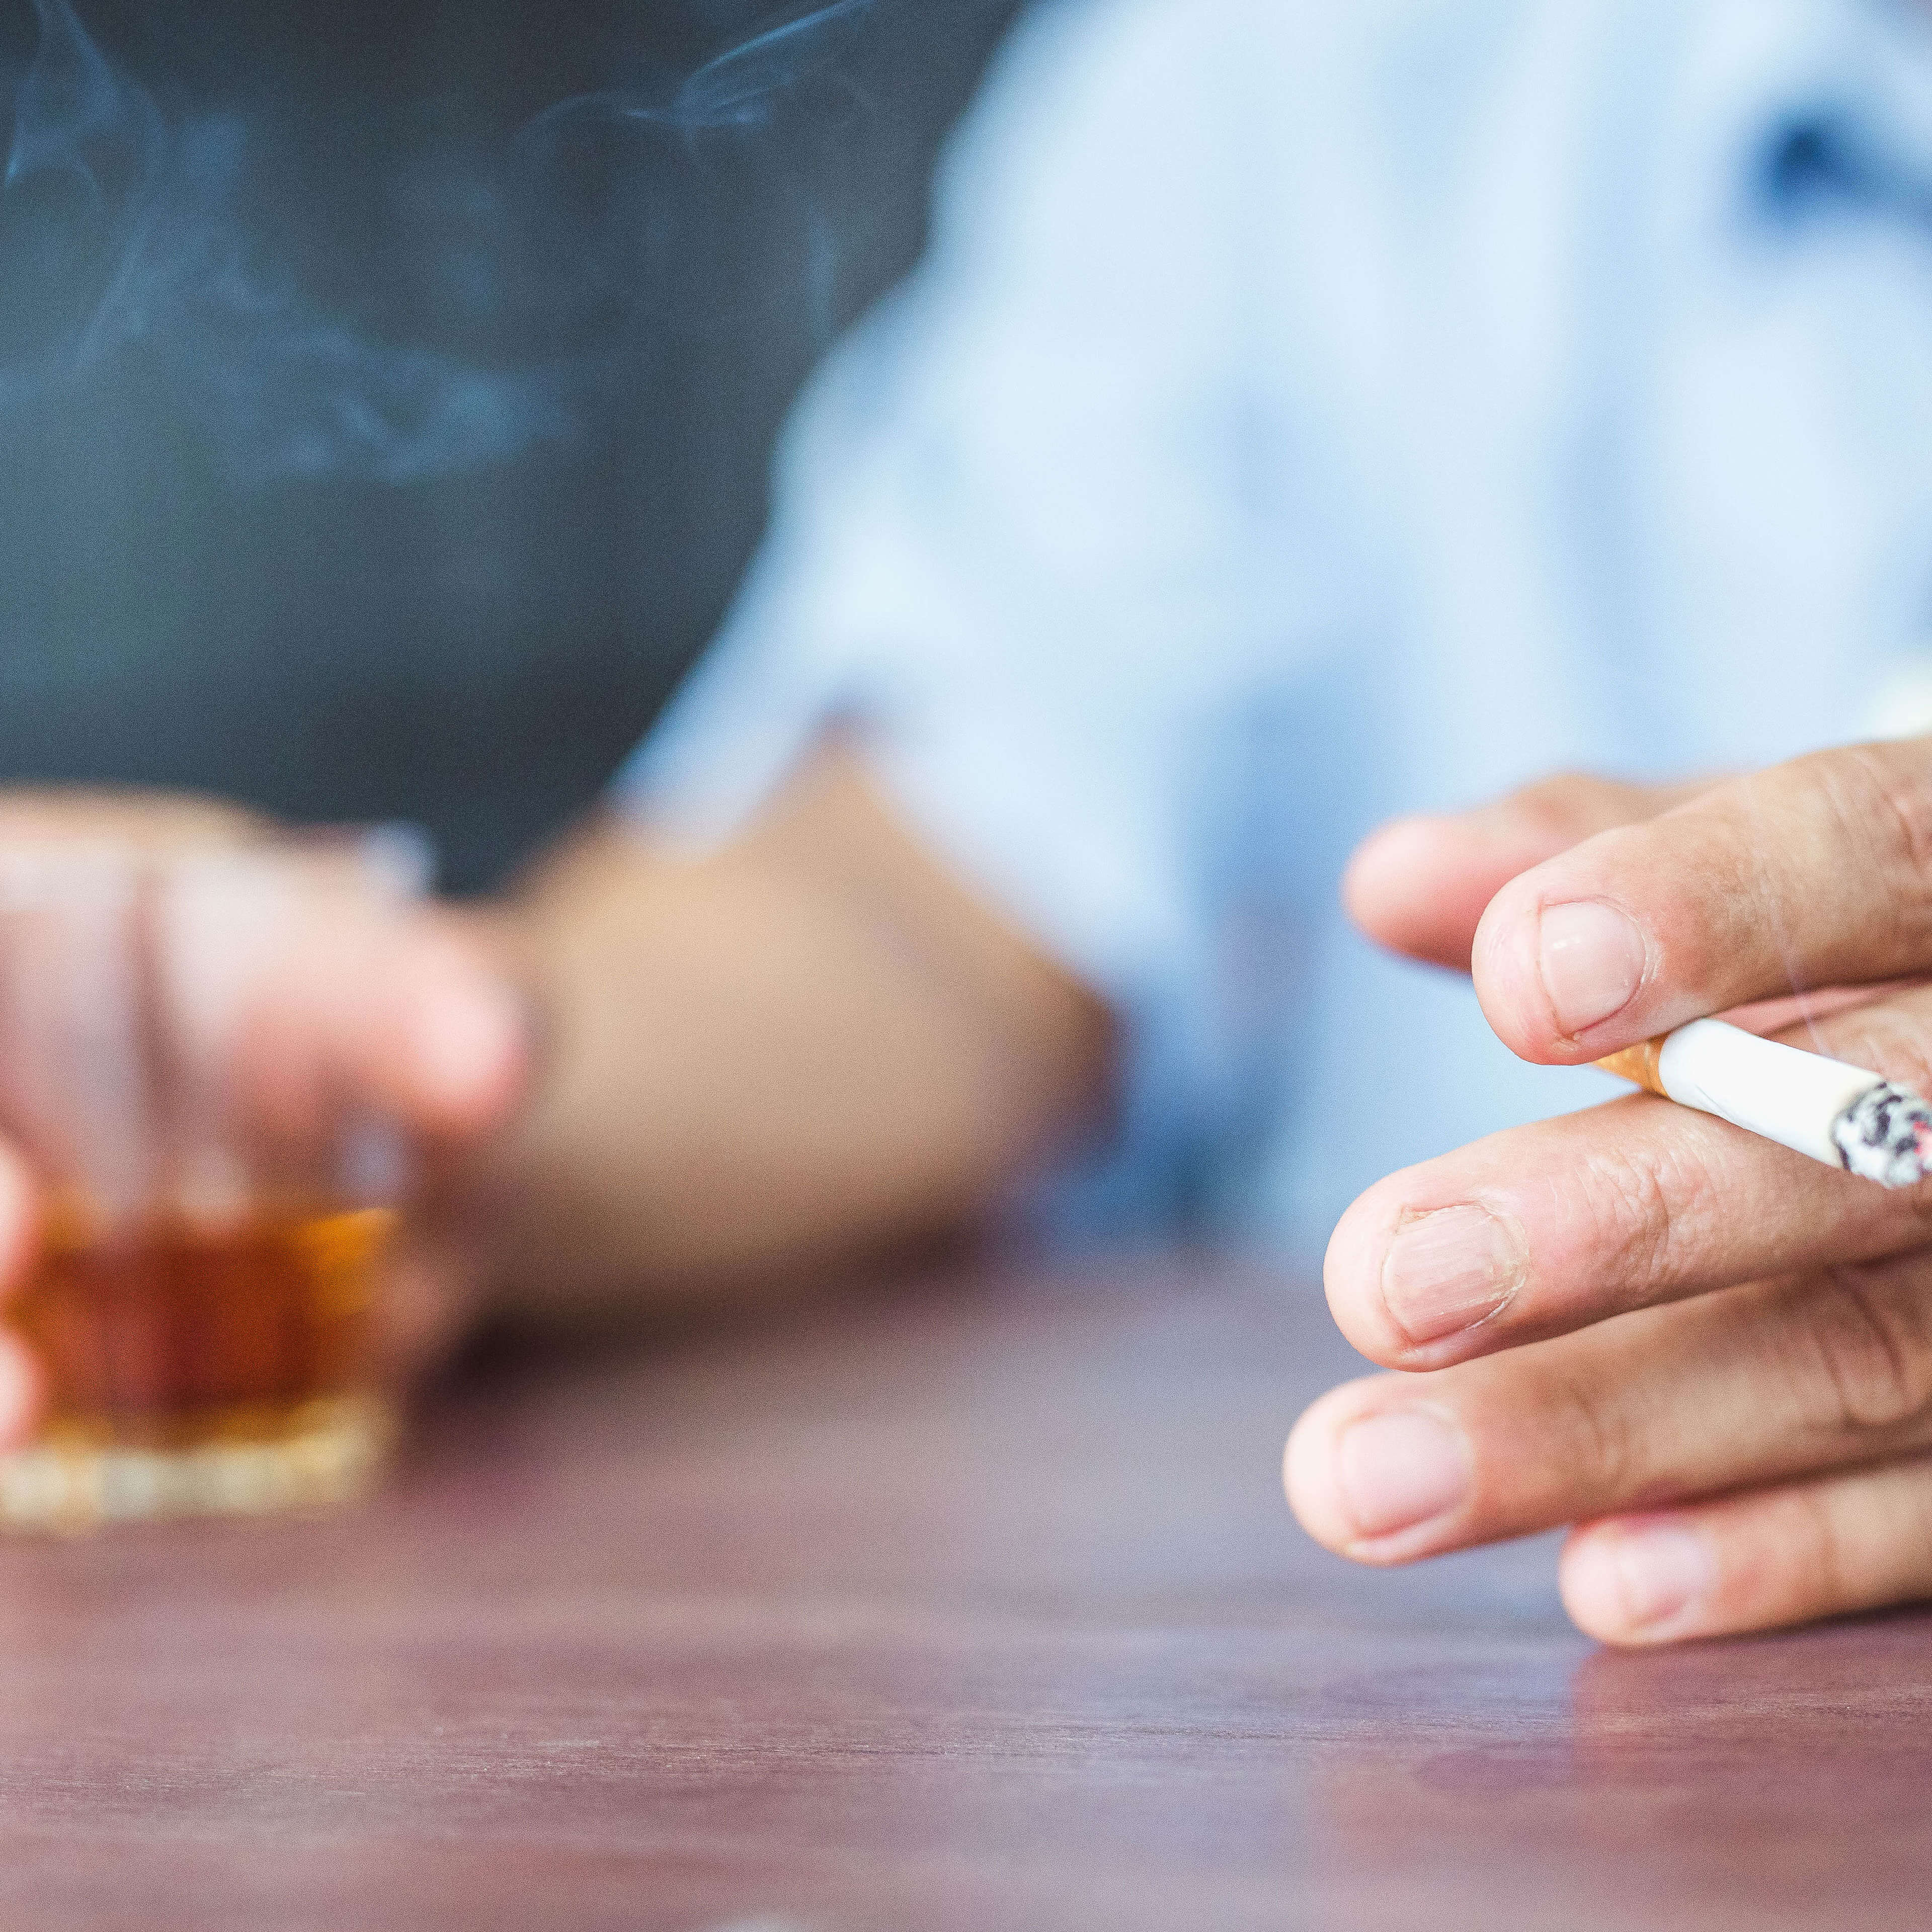 Cancer : tabac et alcool, leur poids dans les facteurs de risque